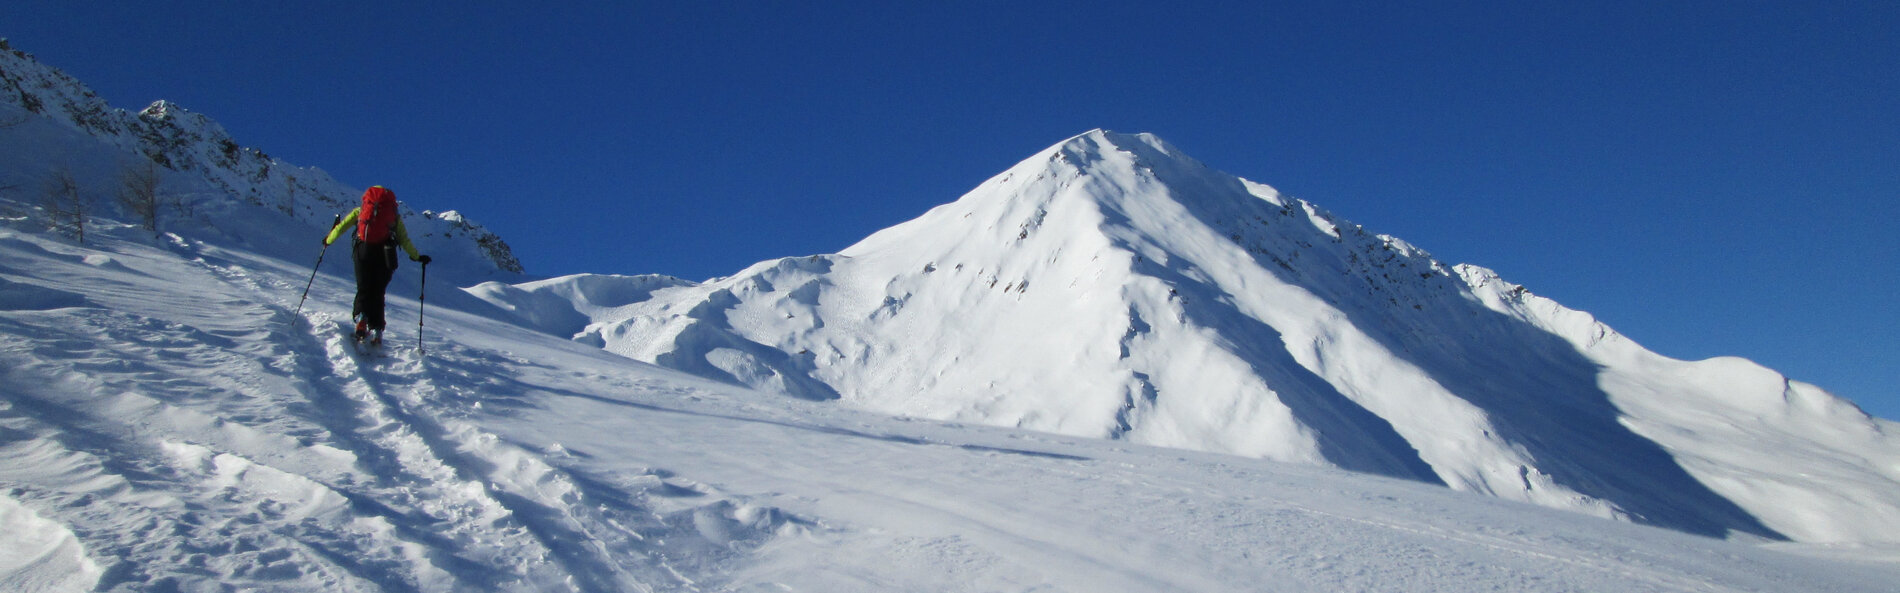 Skitourengeher geht in Richtung eines tief winterlich verschneiten Bergs. © TVB Osttirol, F. Steiner 